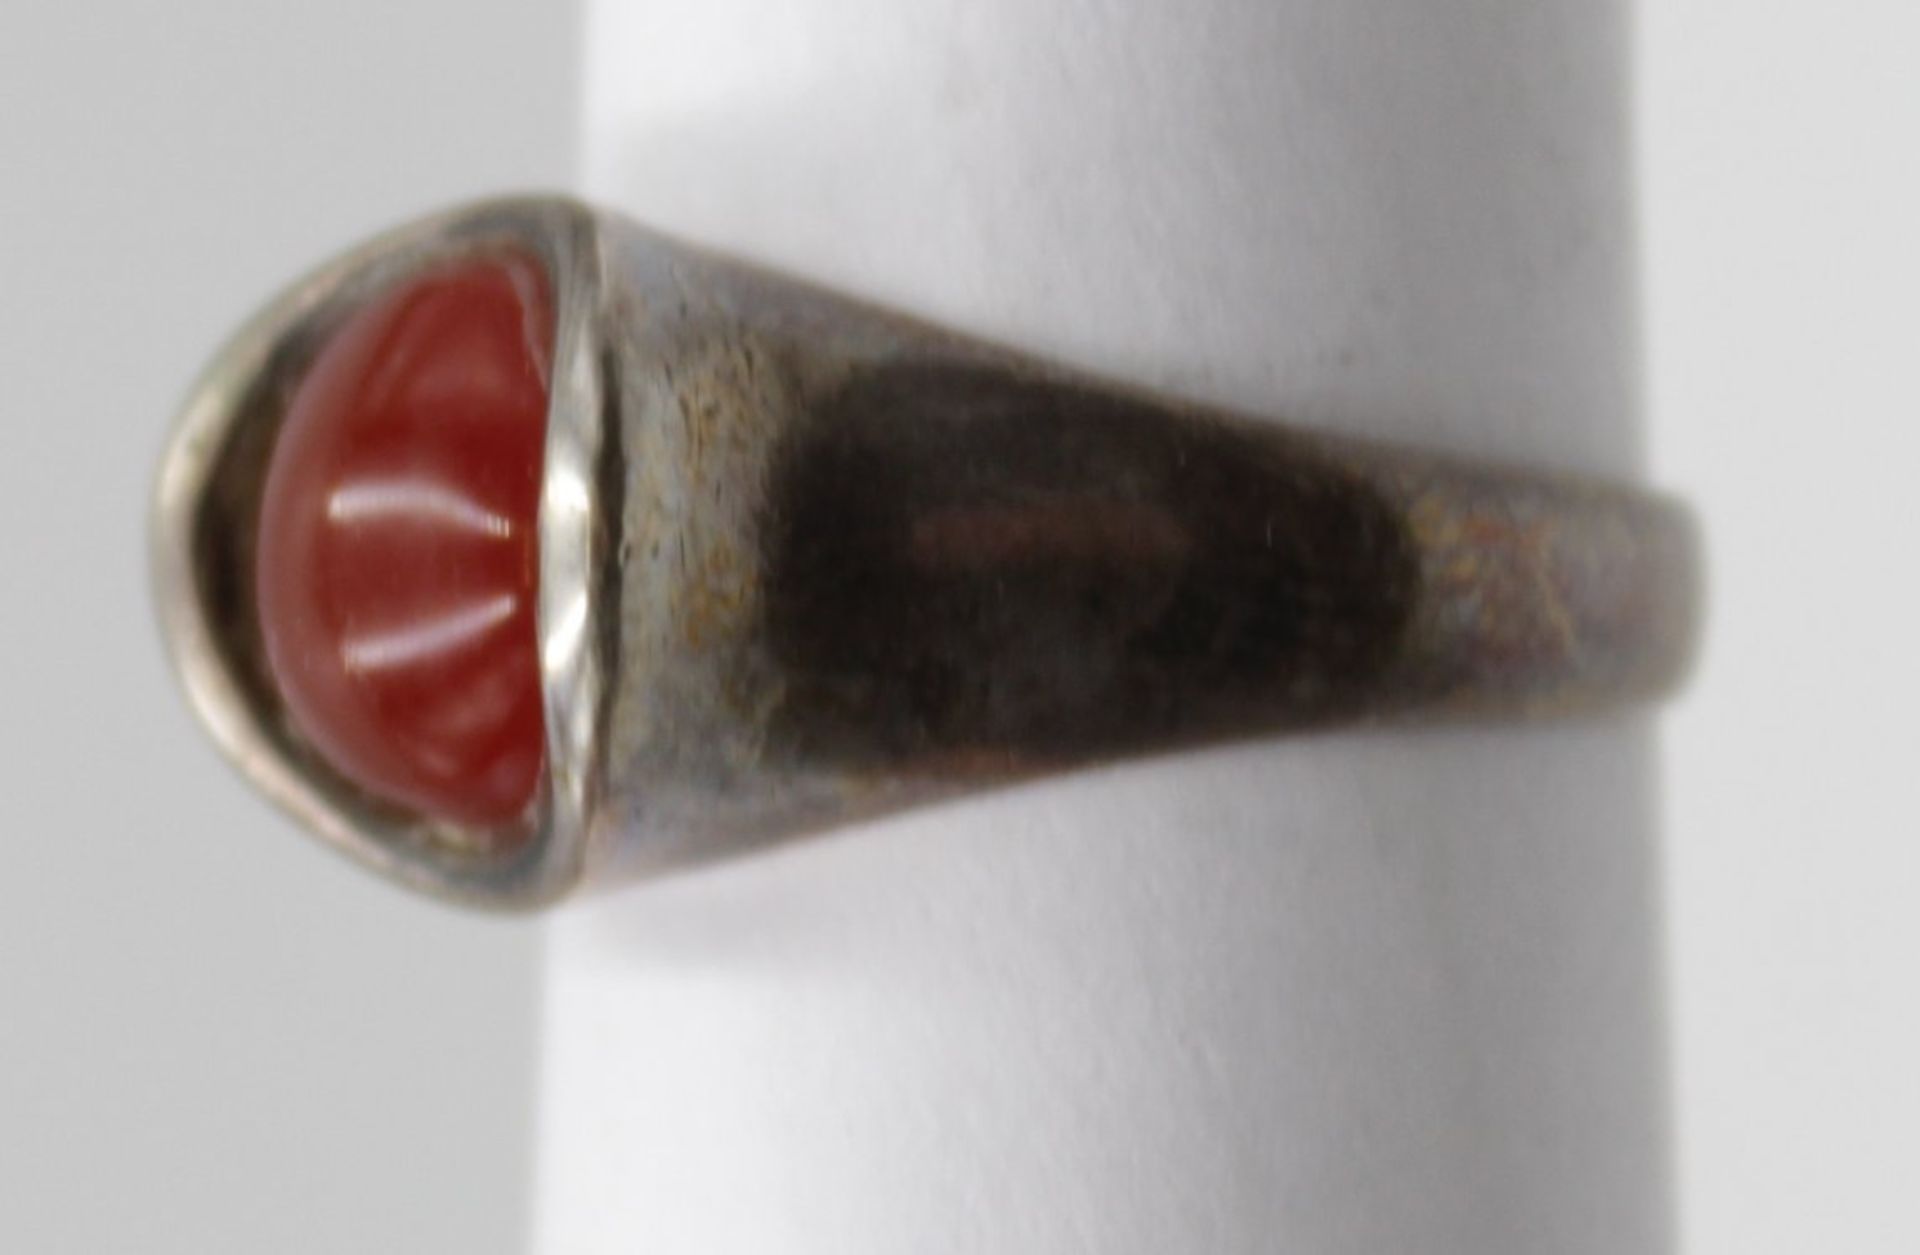 800er Silber-Ring mit Carneol, gemarkt "J.B.".offene Schiene, 4,9gr. - Bild 2 aus 4